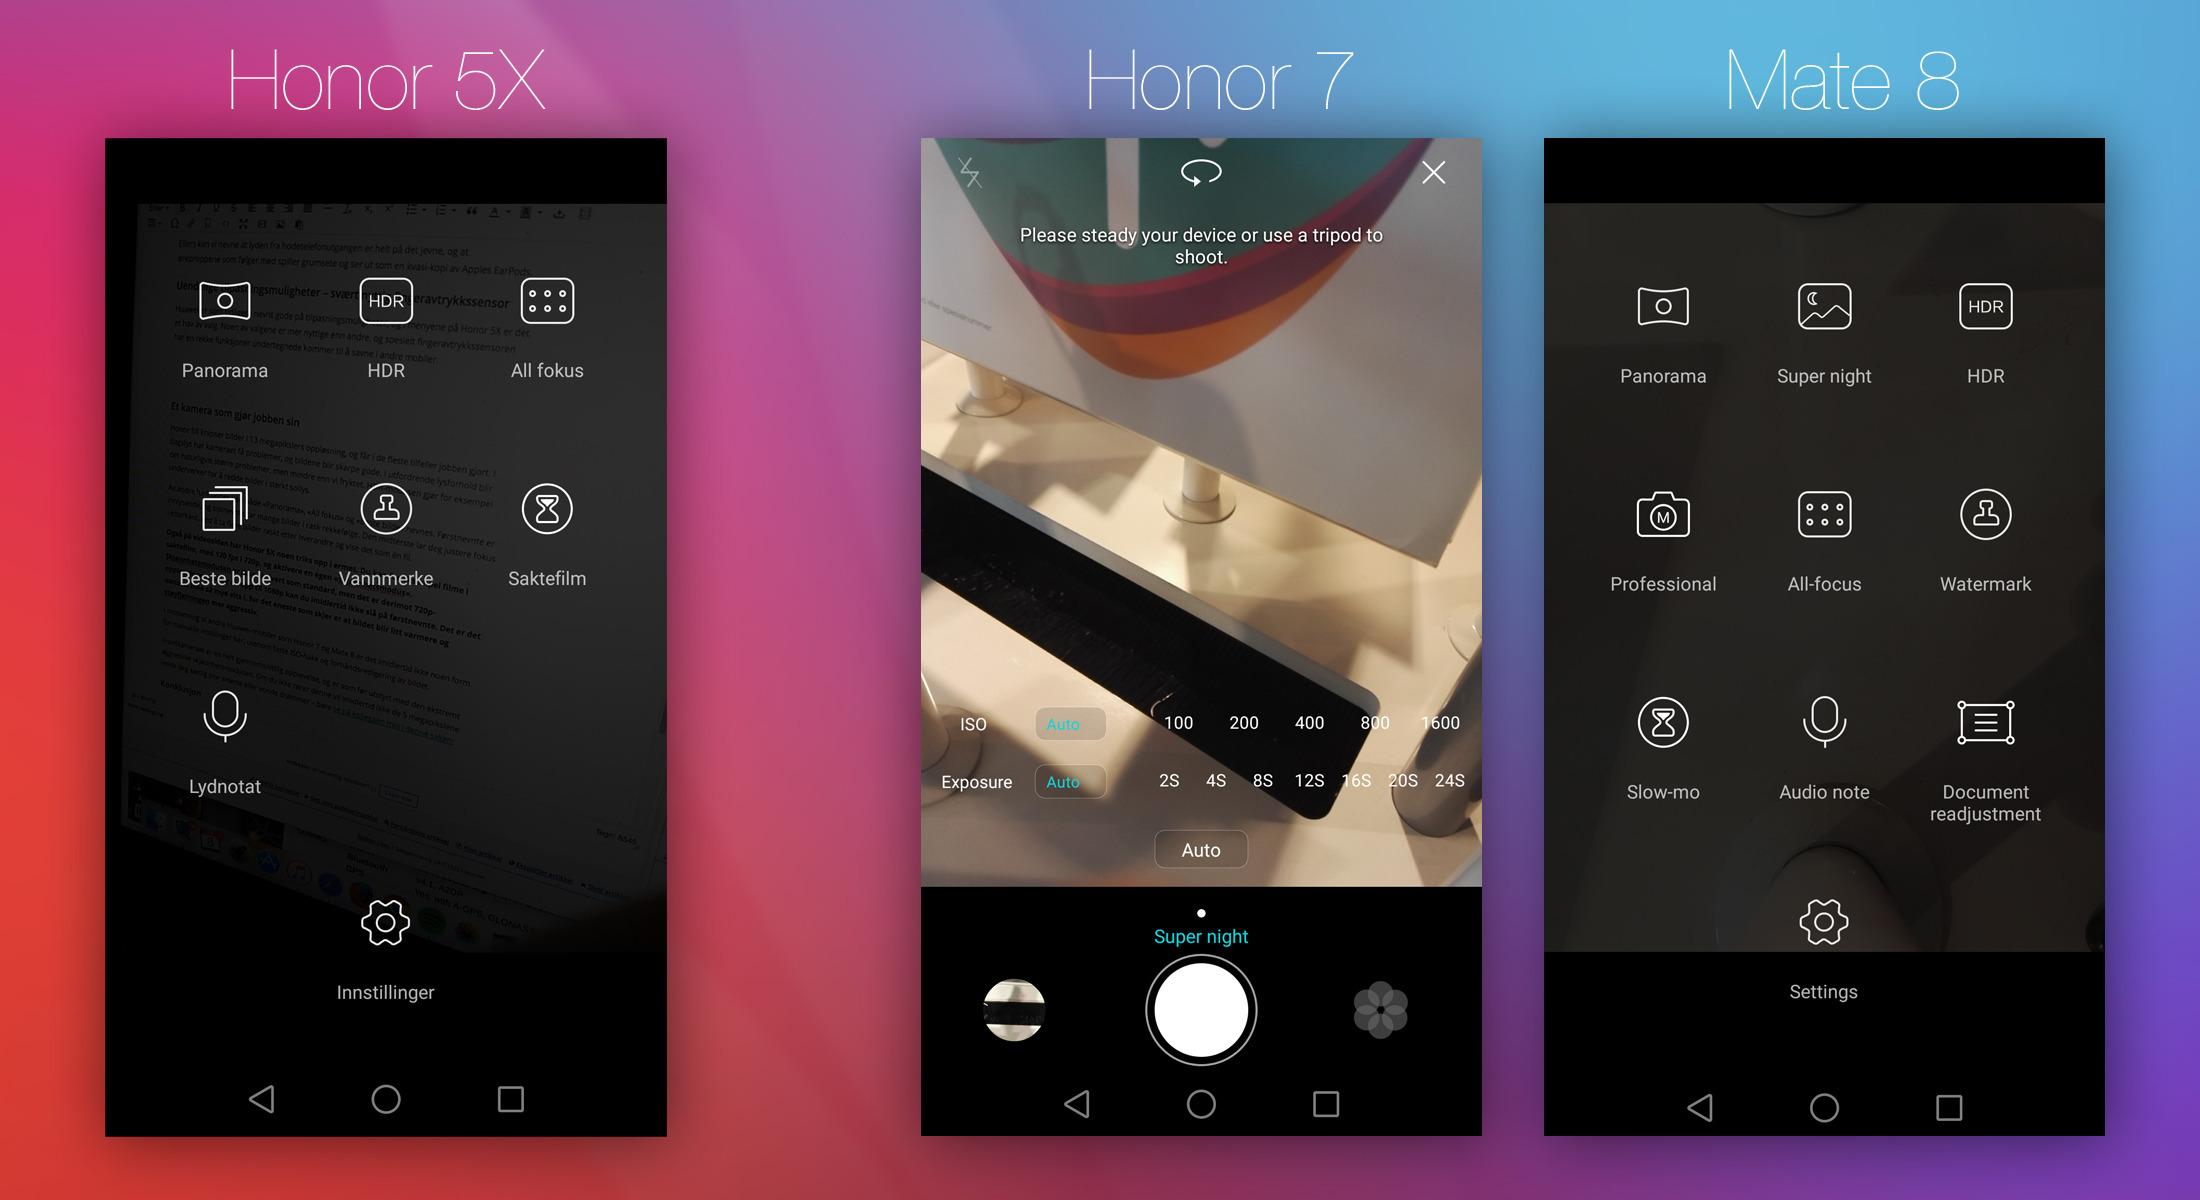 Både Honor 7 og Mate 8 har en form for manuelle kamerainnstillinger. Det mangler Honor 5X.